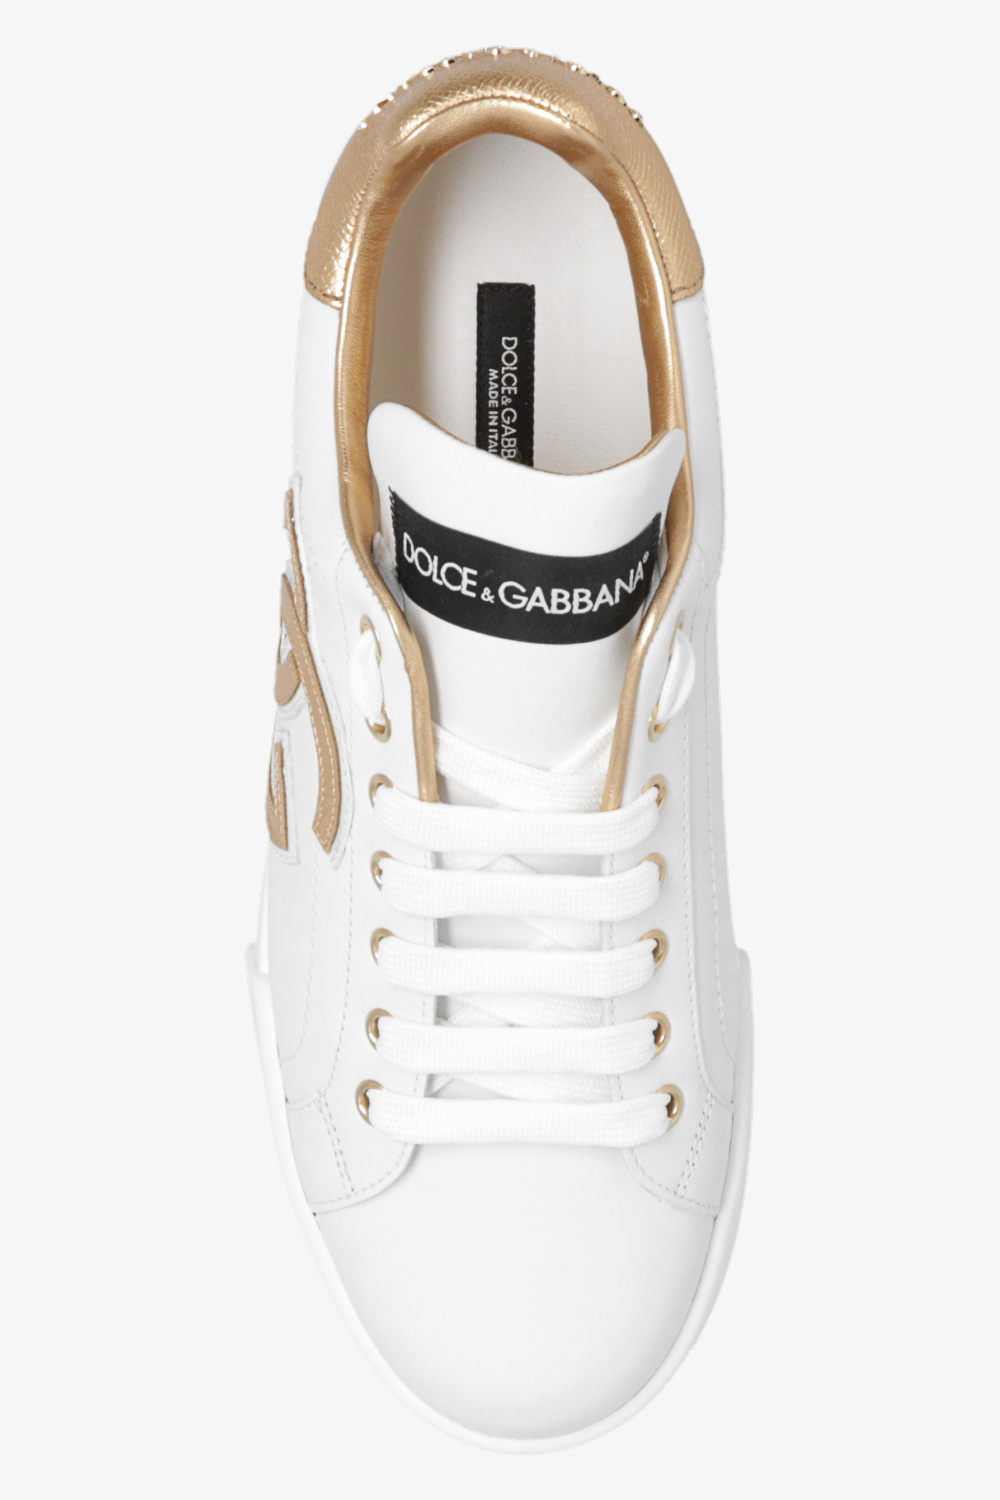 White 'Portofino' sneakers Dolce & Gabbana - Vitkac KR